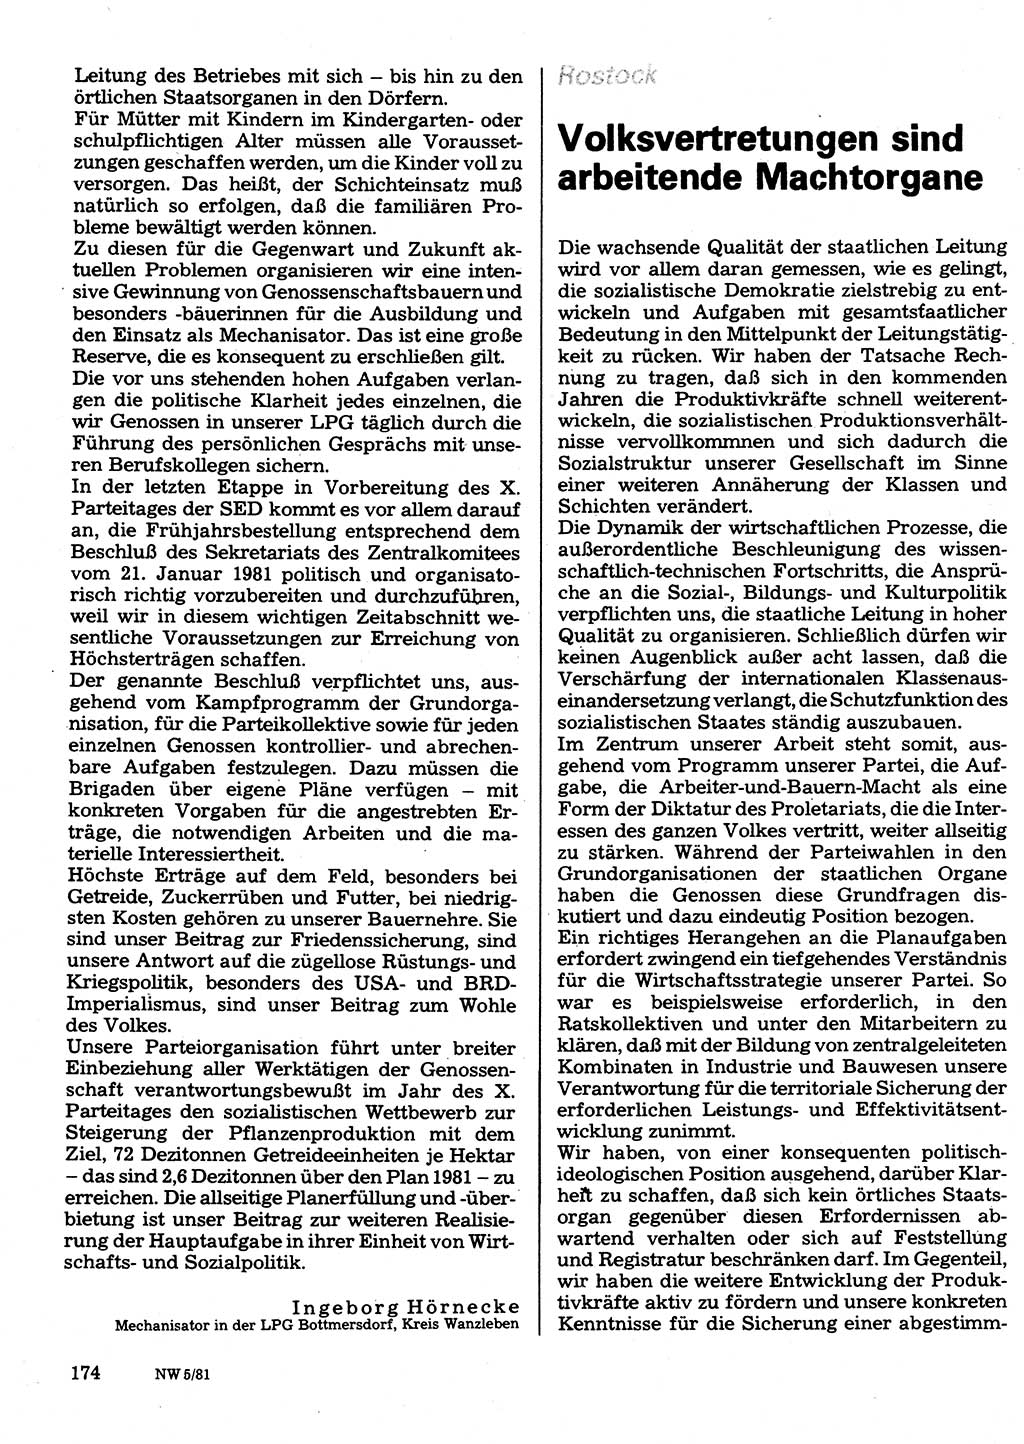 Neuer Weg (NW), Organ des Zentralkomitees (ZK) der SED (Sozialistische Einheitspartei Deutschlands) für Fragen des Parteilebens, 36. Jahrgang [Deutsche Demokratische Republik (DDR)] 1981, Seite 174 (NW ZK SED DDR 1981, S. 174)